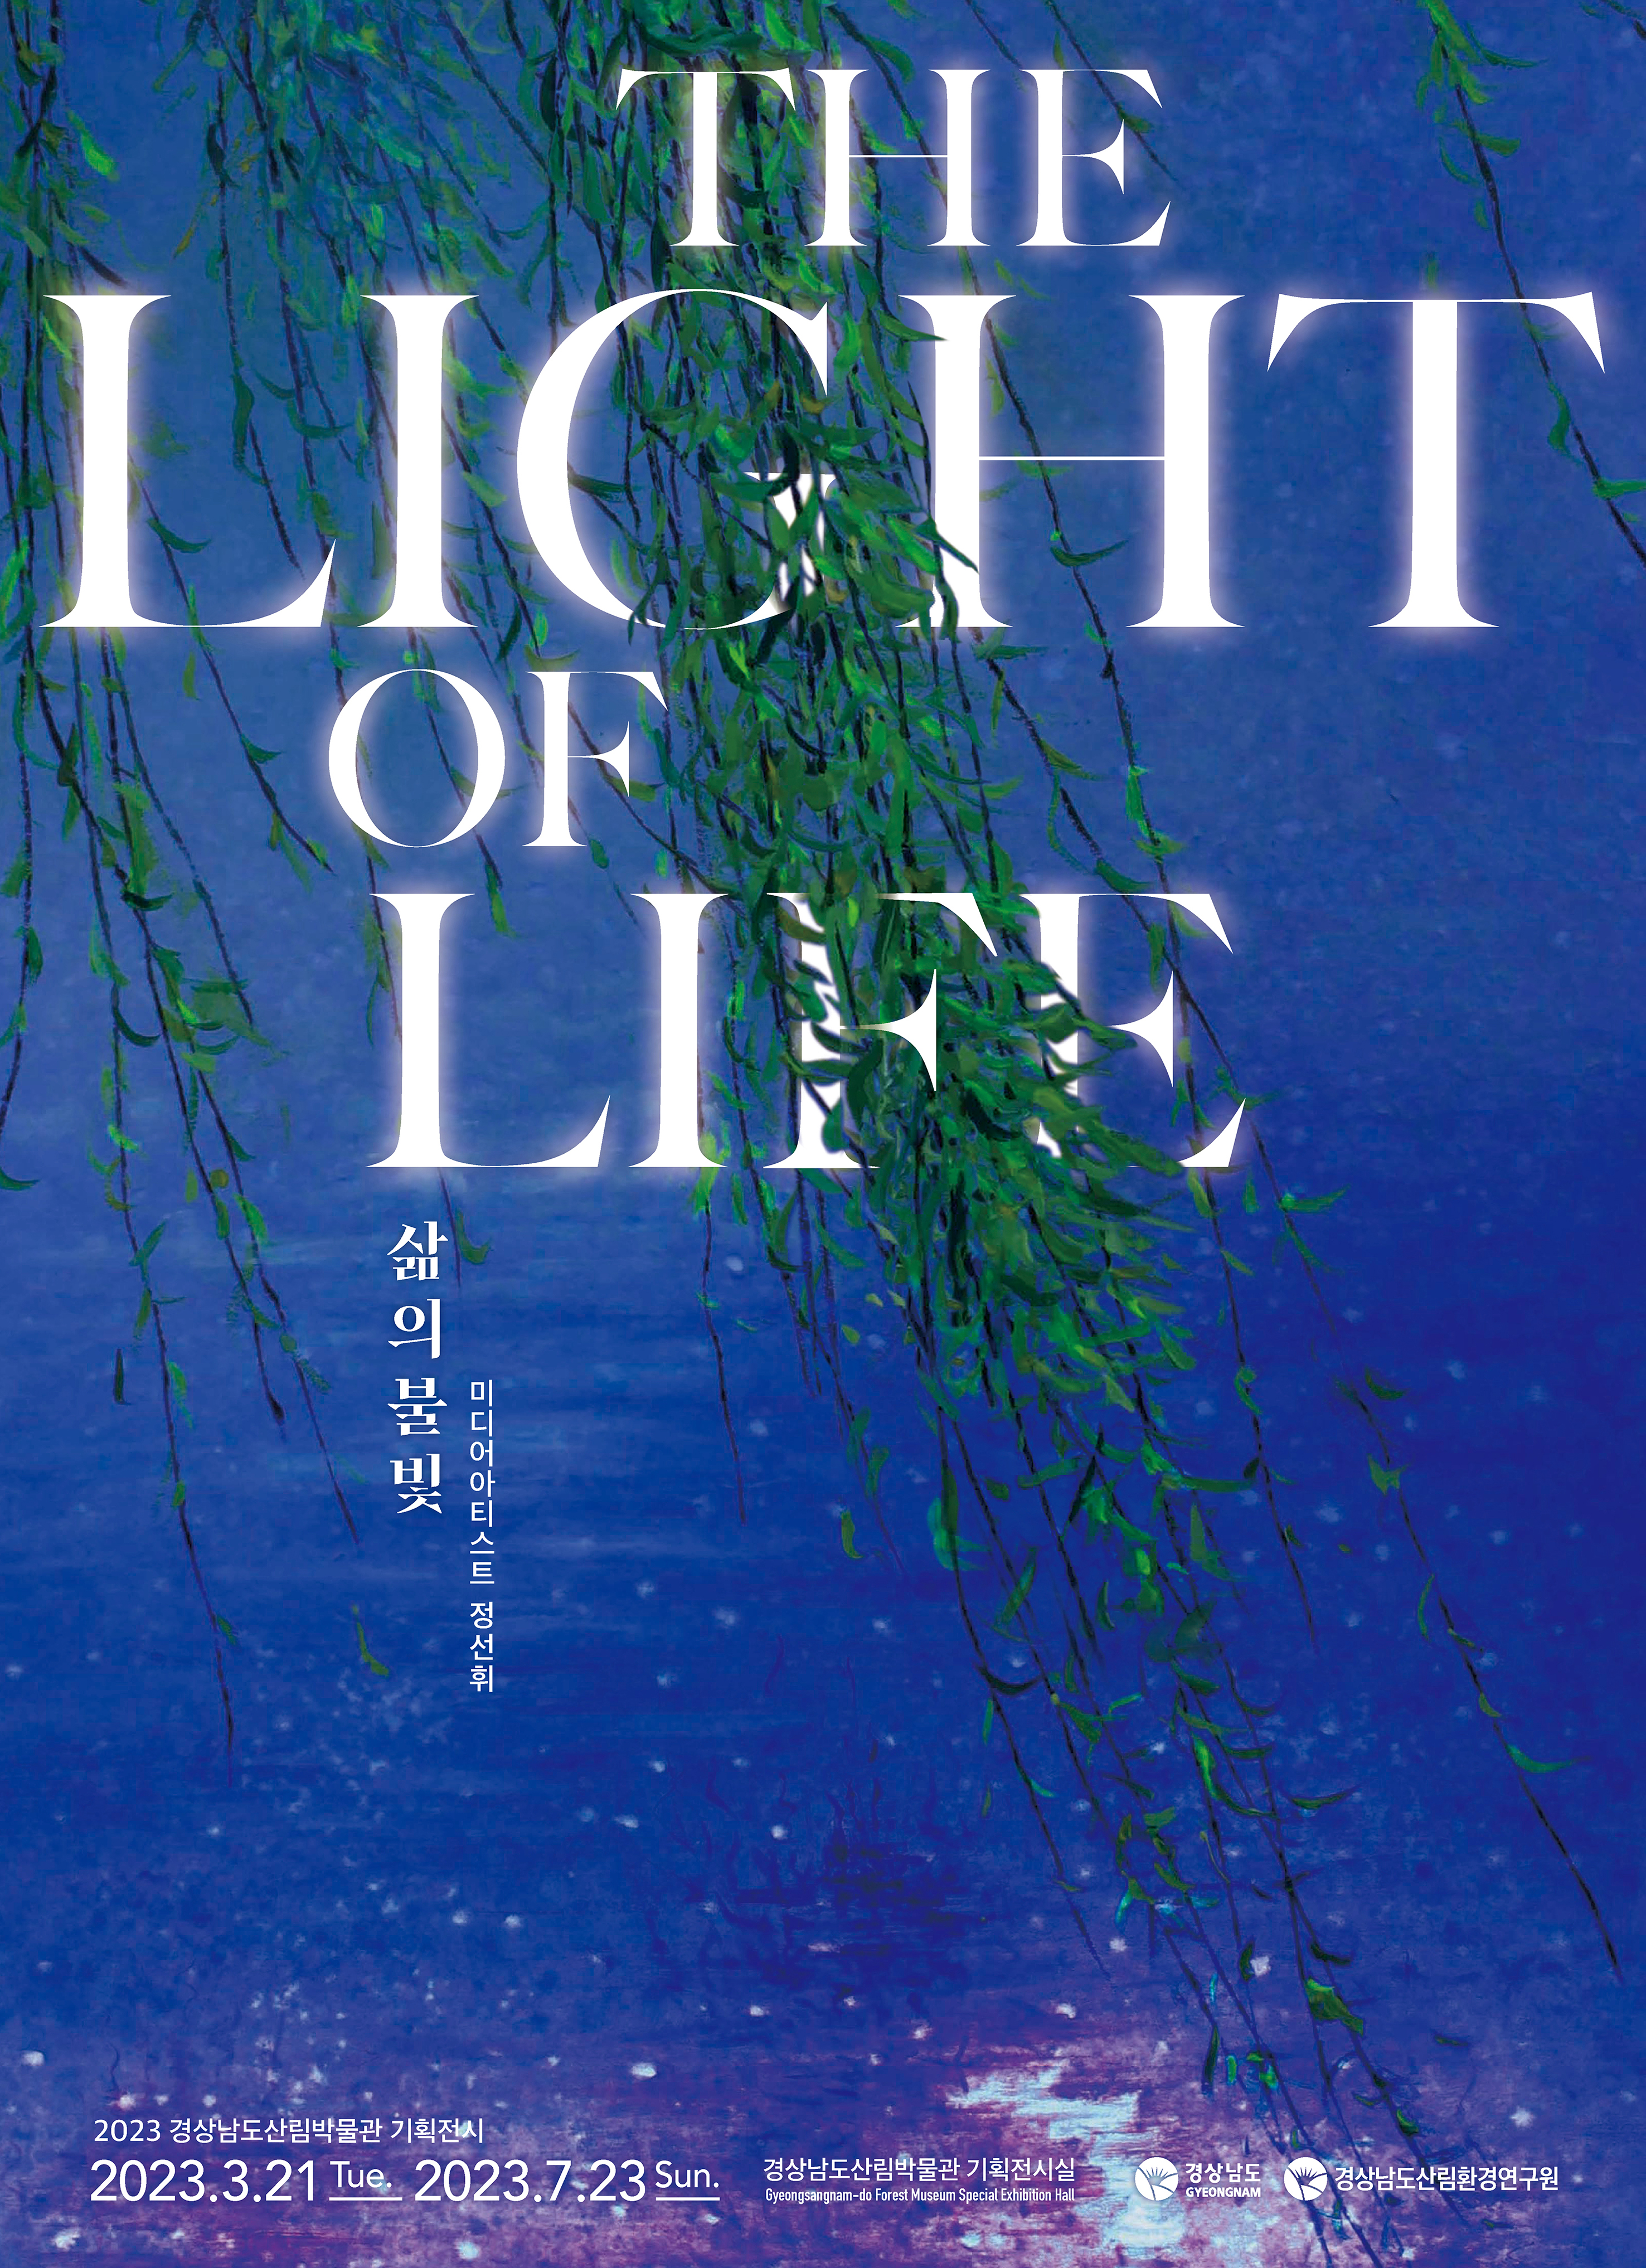 2023년 산림박물관 기획전시 「삶의 불빛_The Light of life」의 파일 이미지